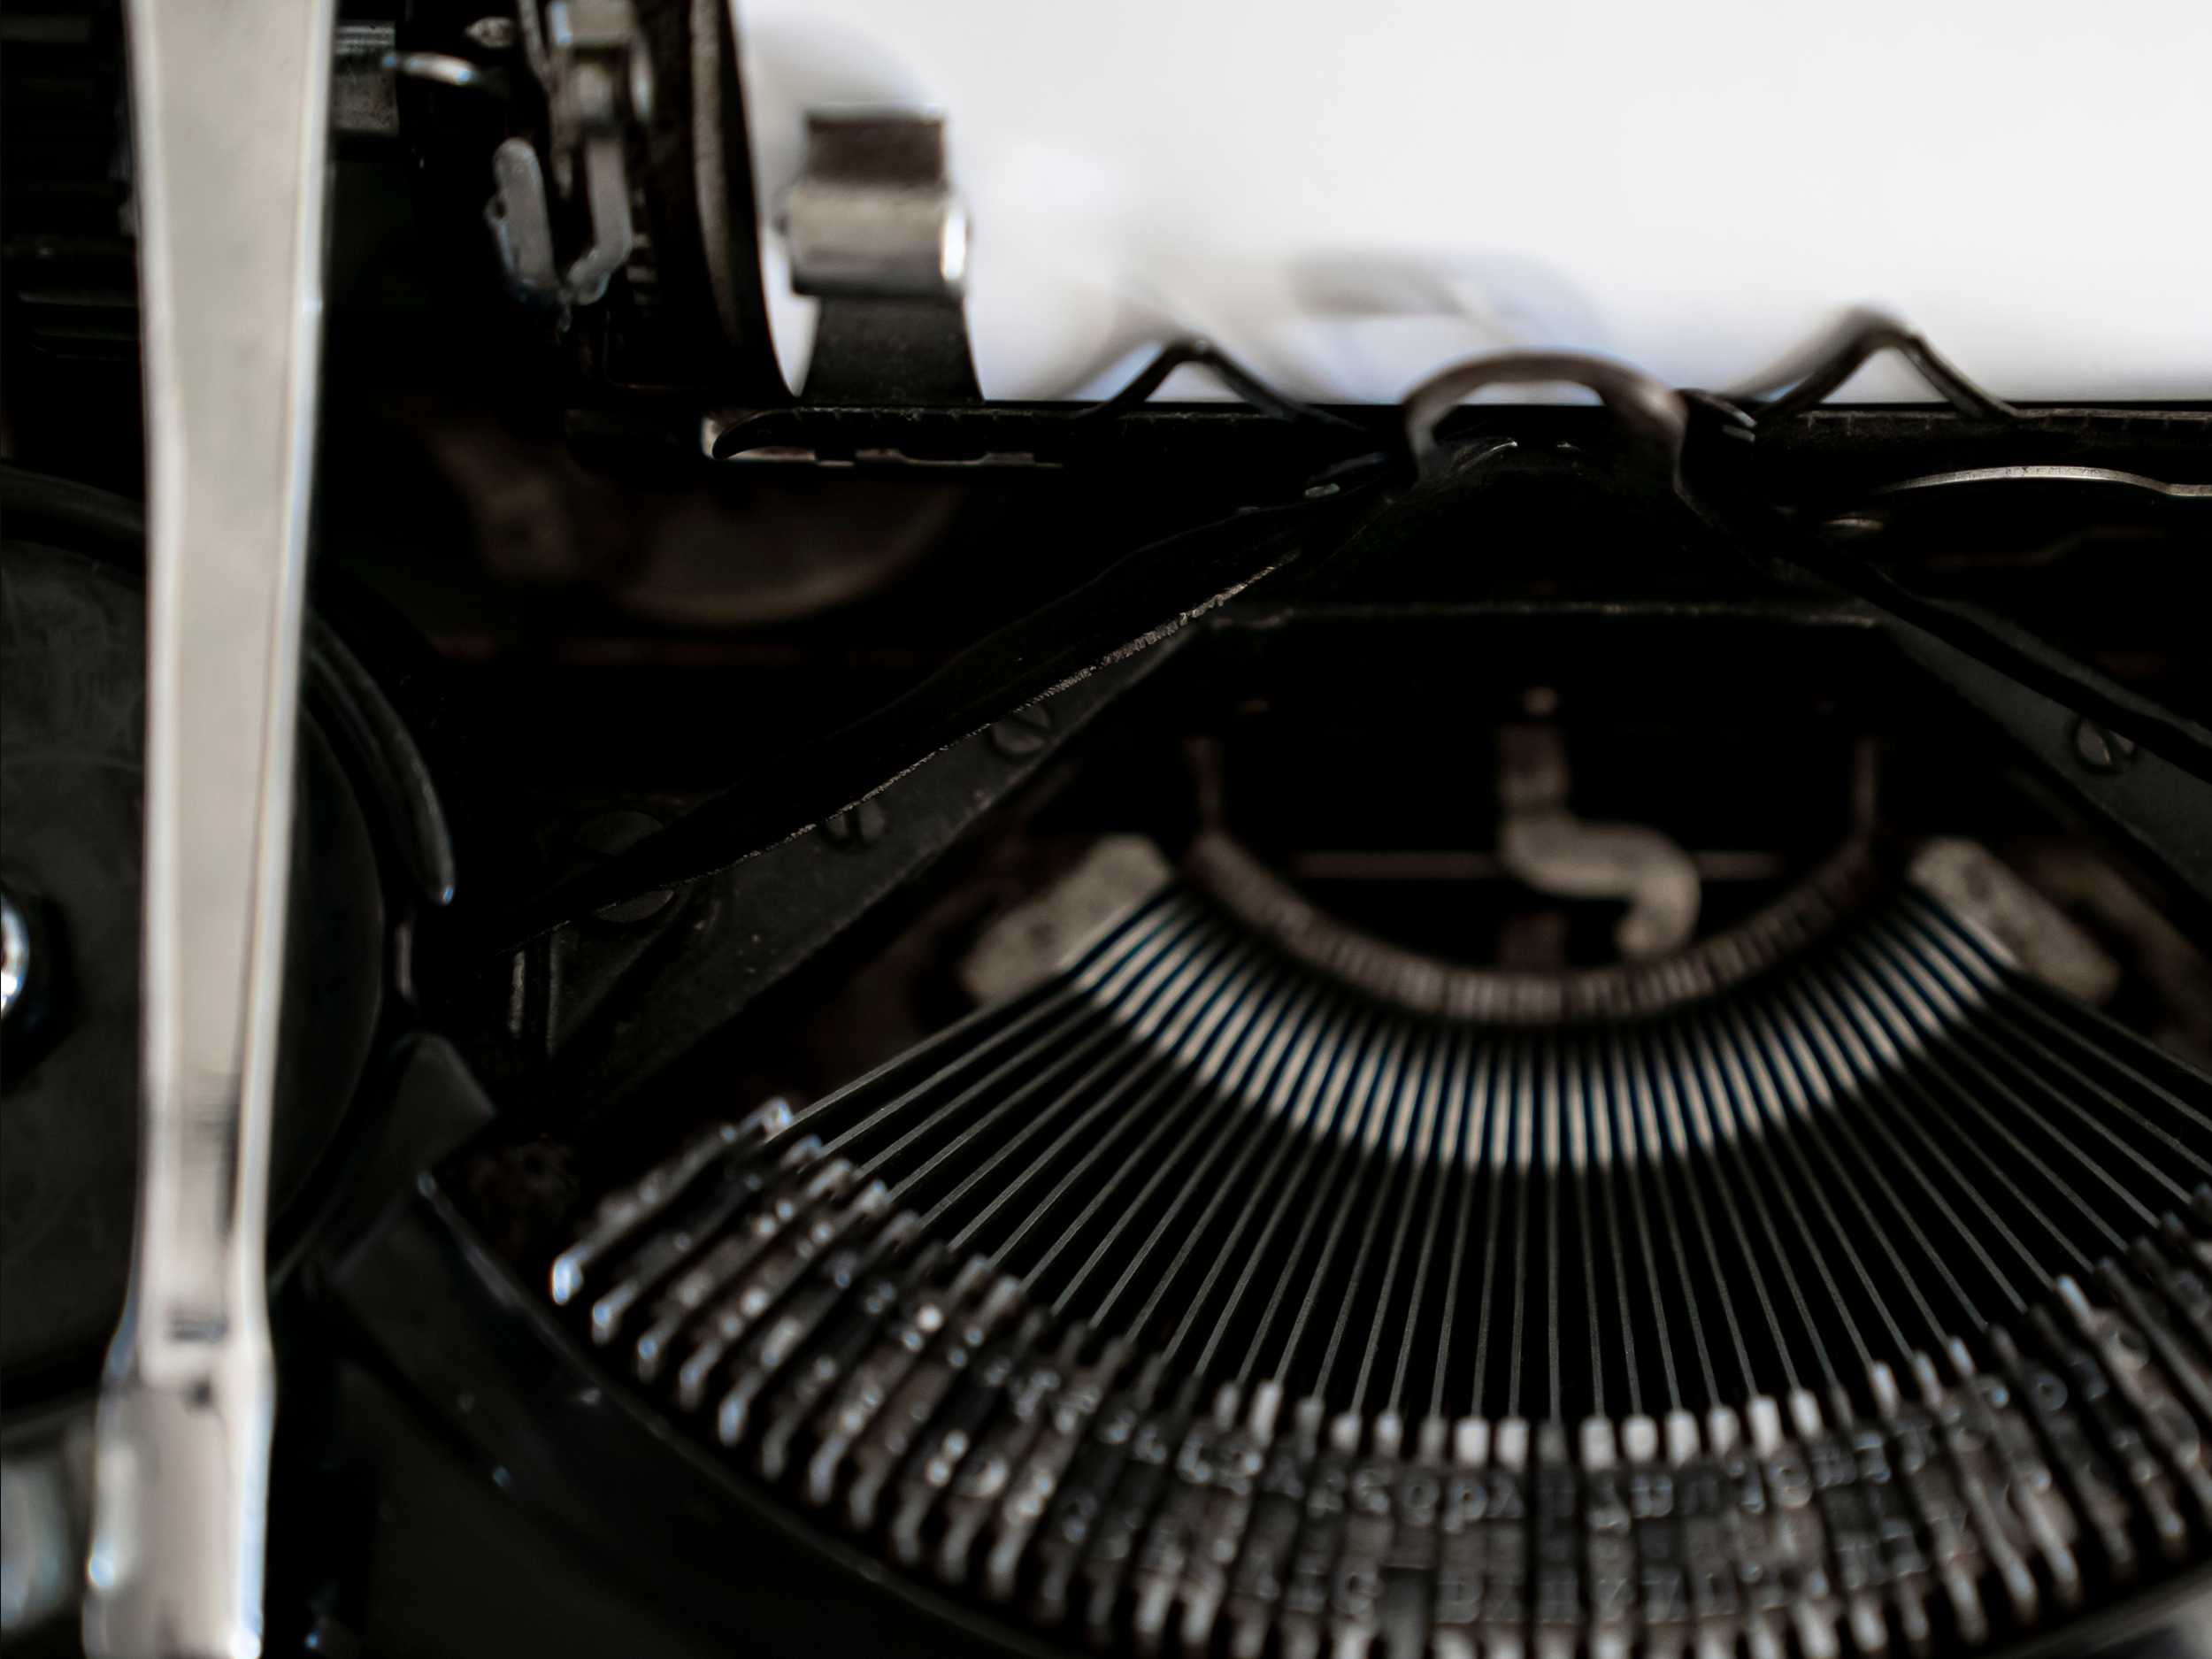 Top view of old typewriter